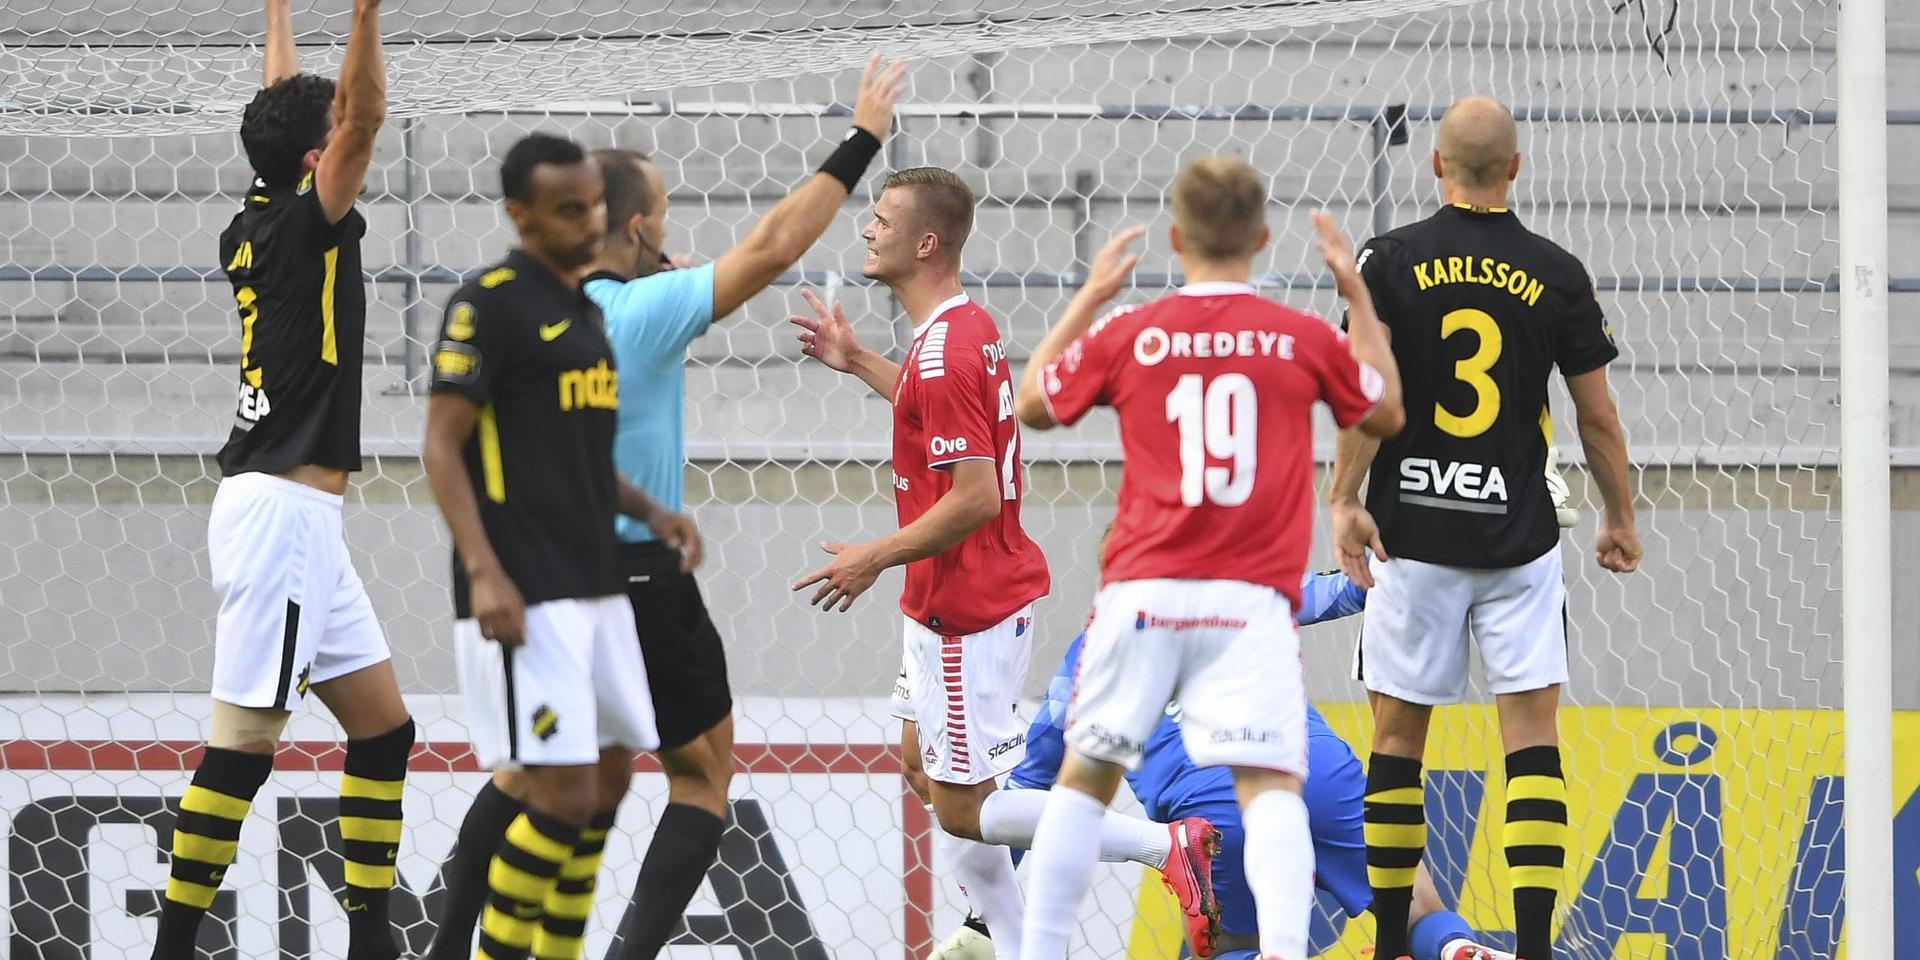 Kalmars Alexander Ahl Holmström avbryter jublet när domaren Kaspar Sjöberg blåser offside. I efterhand visade det sig vara felaktigt.